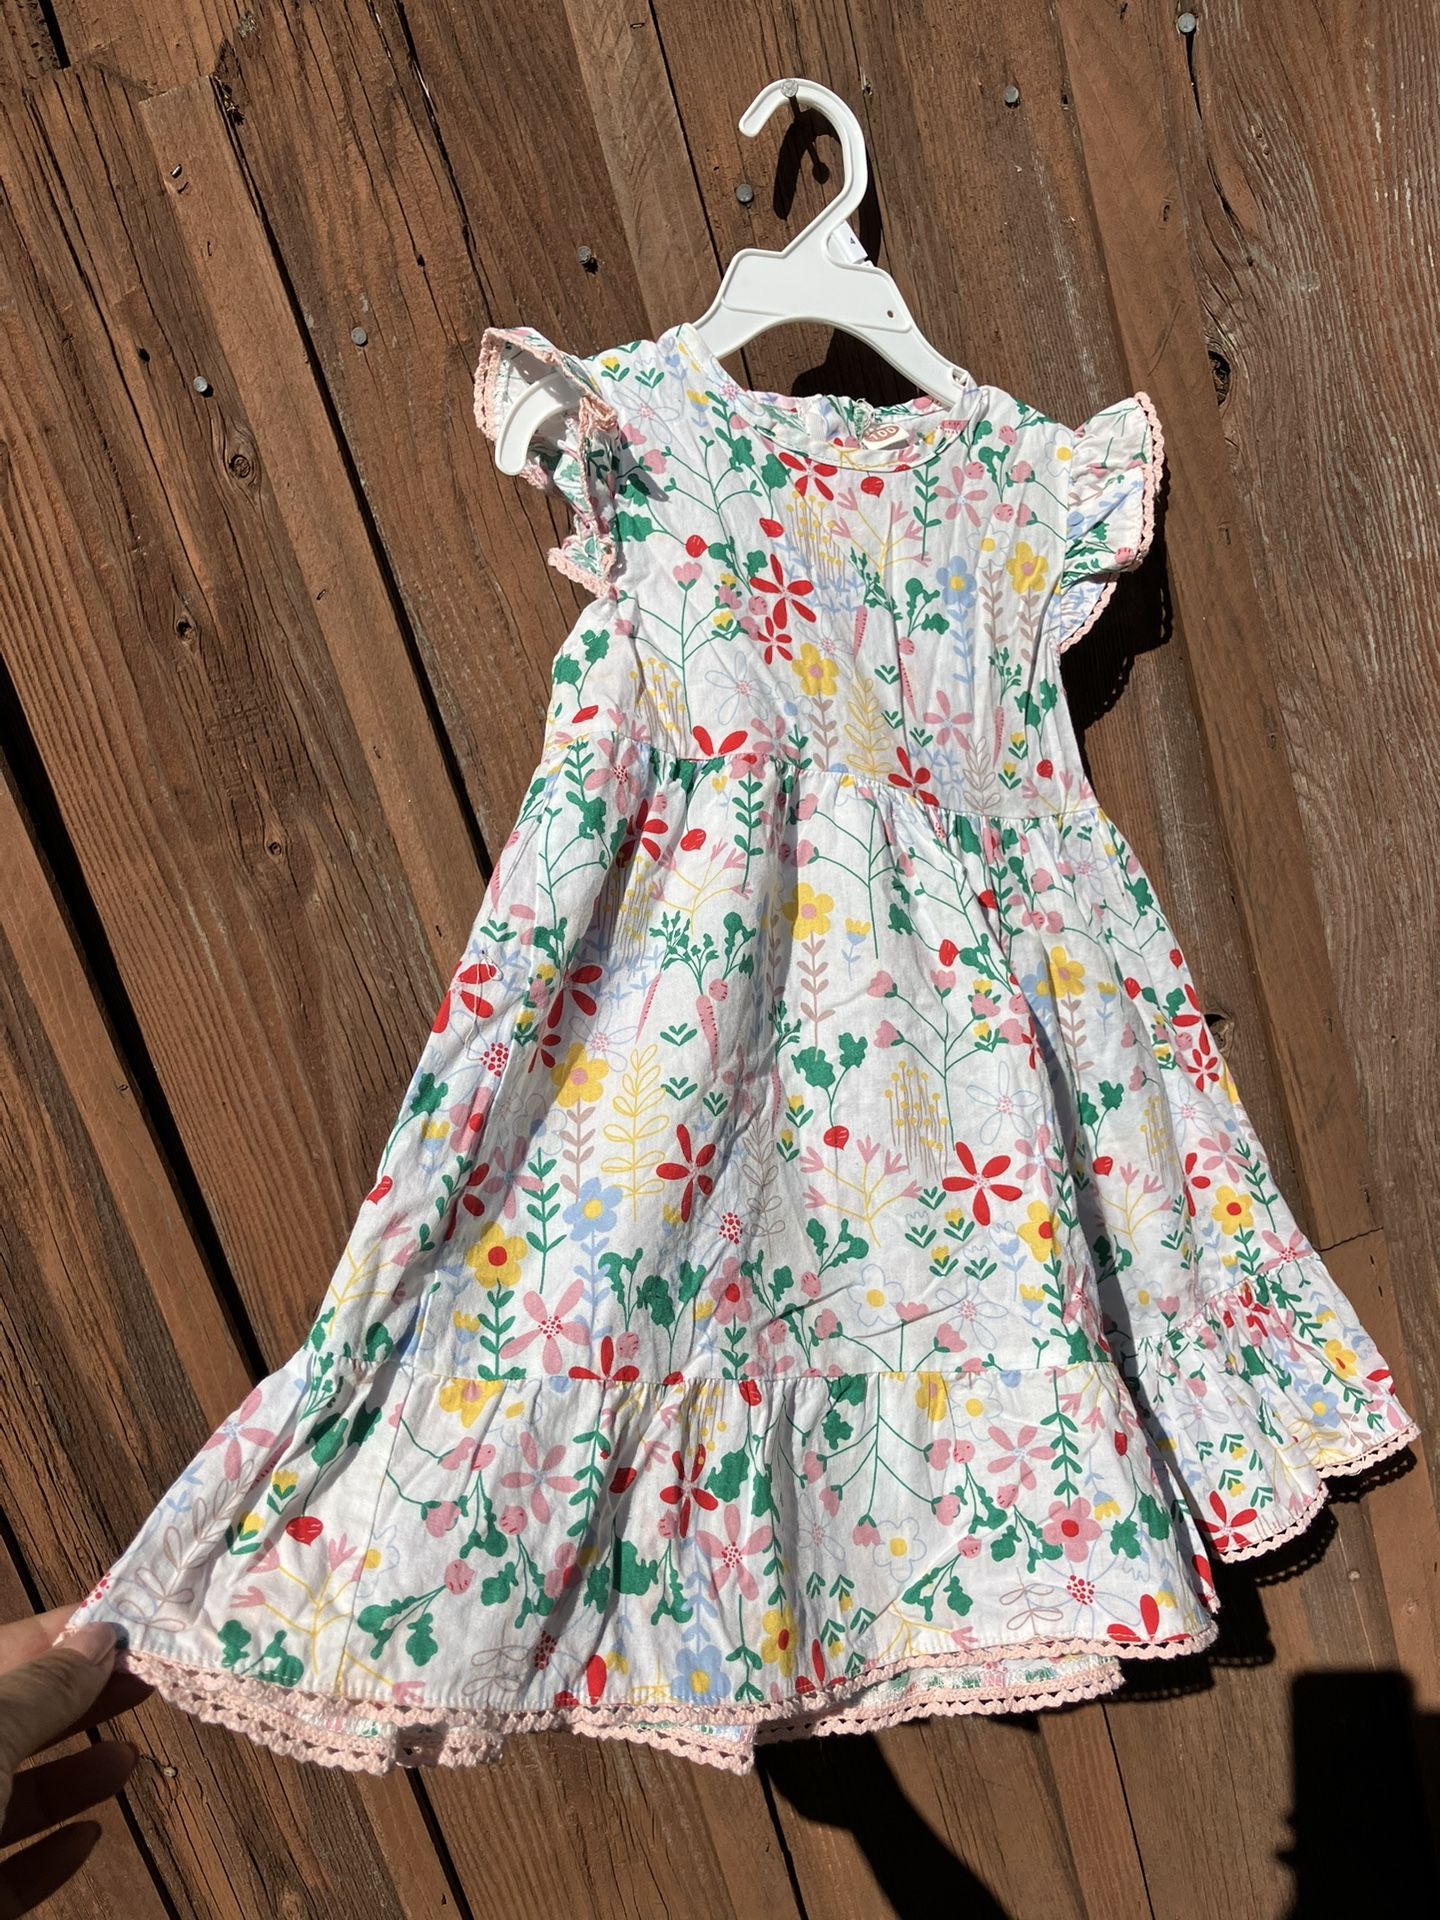 Toddler Girl Dress 